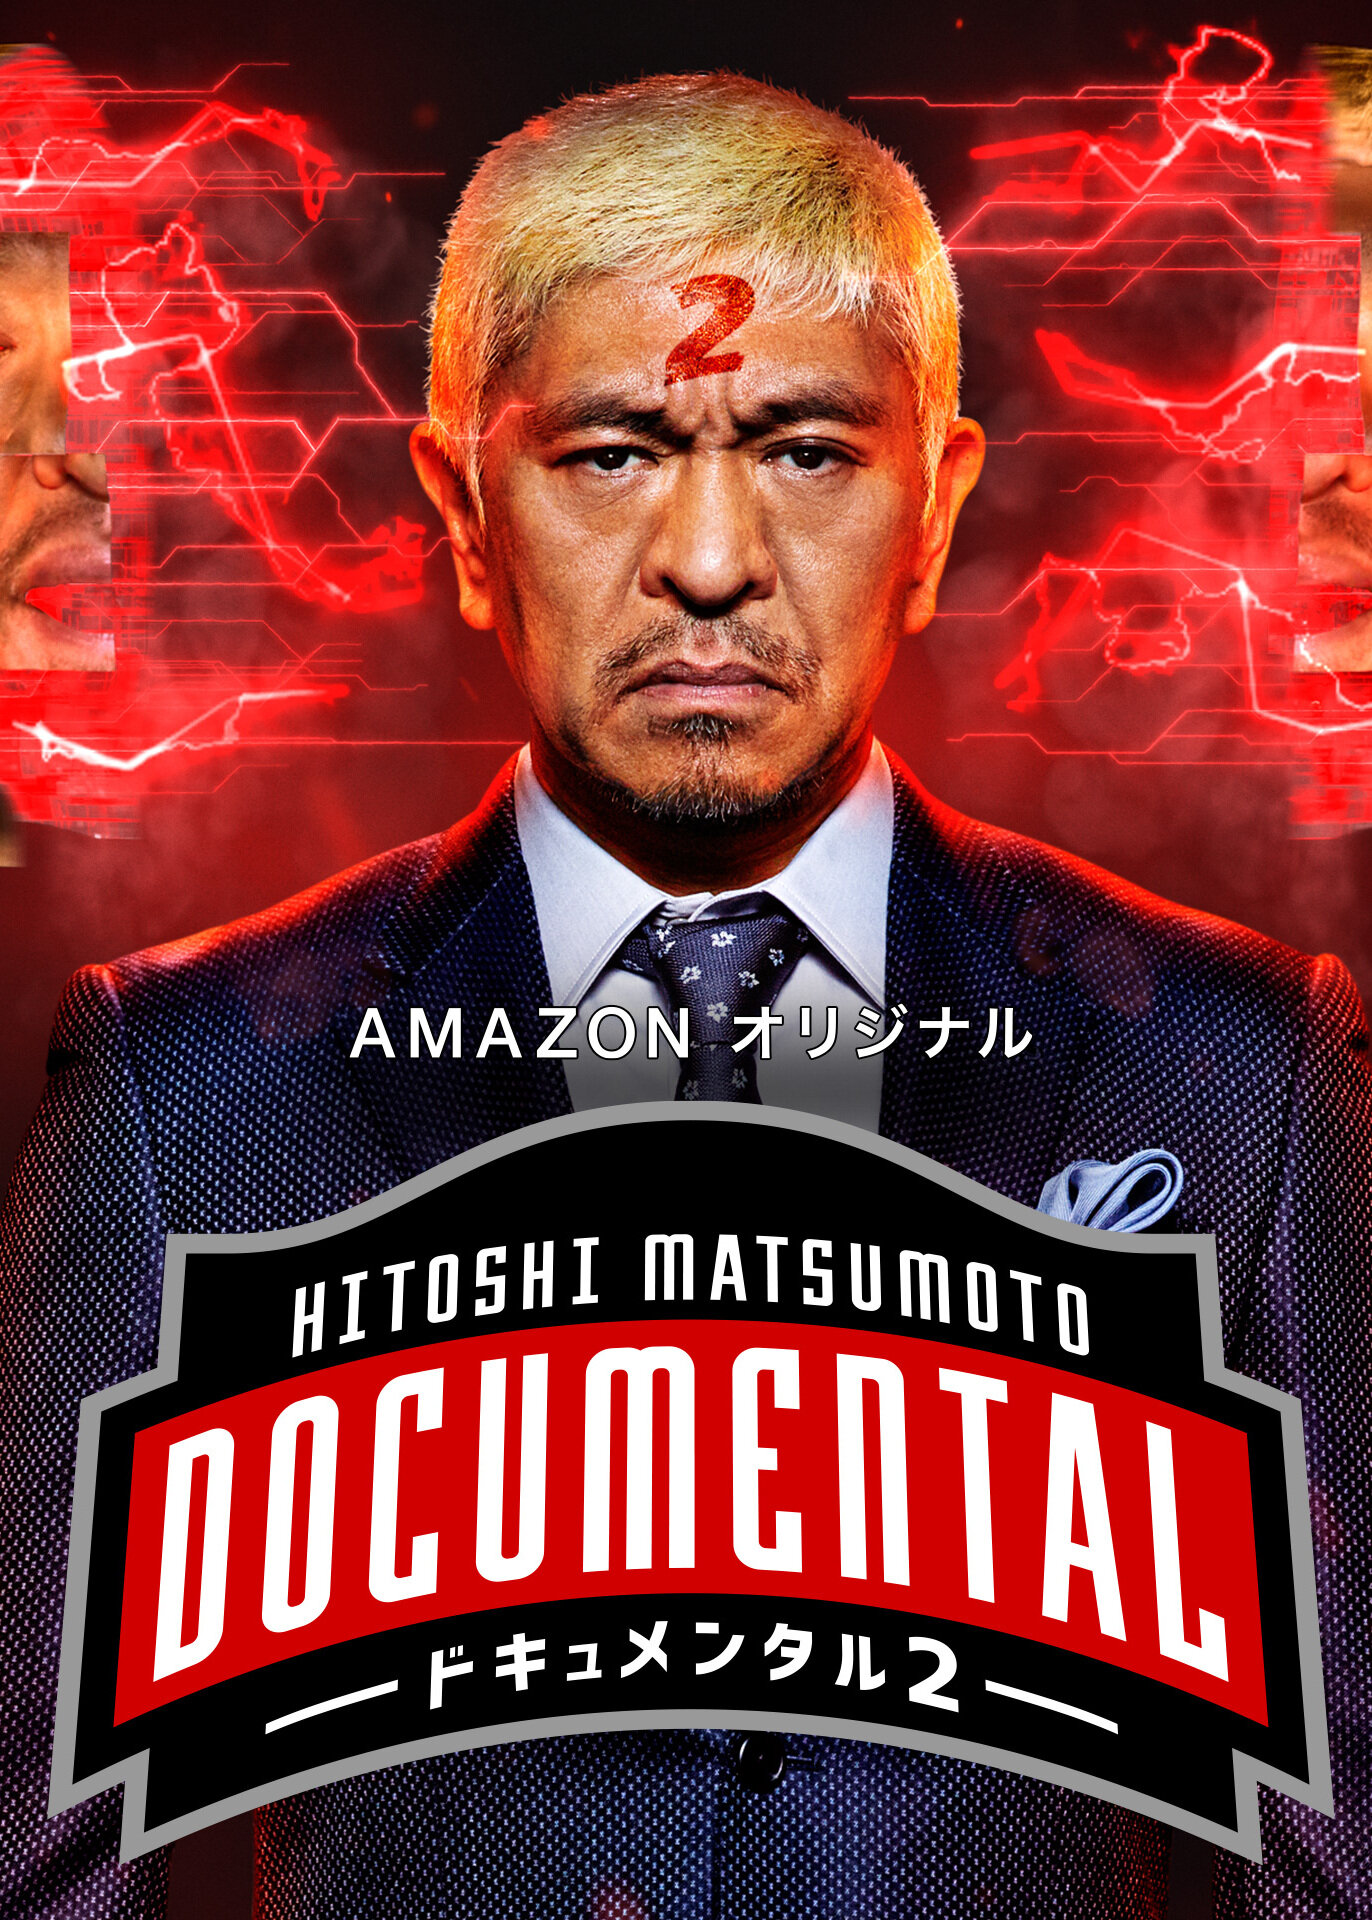 HITOSHI MATSUMOTO Presents Documental ne zaman